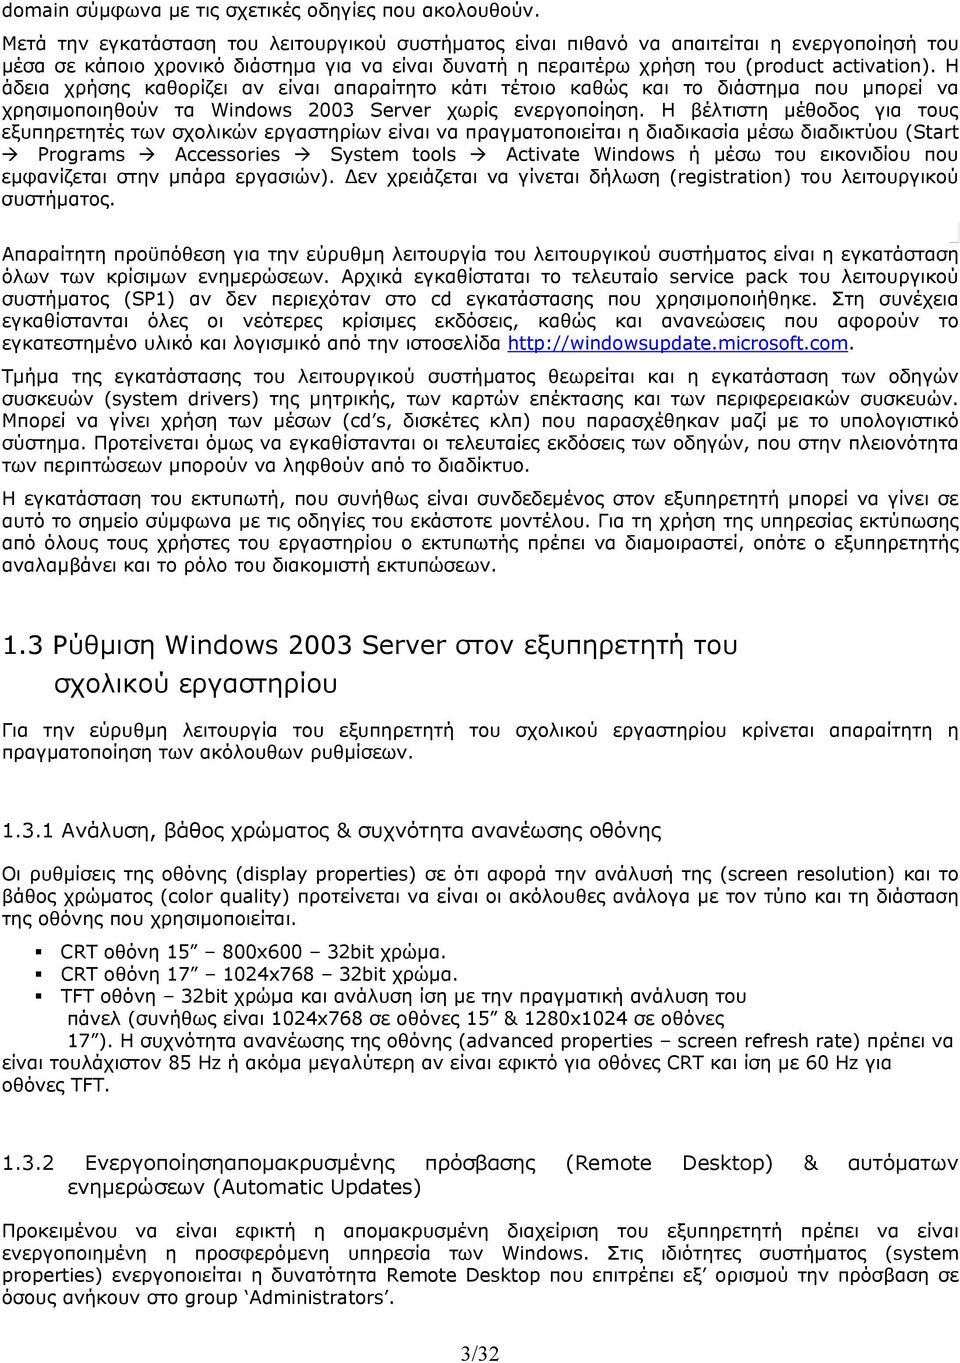 Η άδεια χρήσης καθορίζει αν είναι απαραίτητο κάτι τέτοιο καθώς και το διάστημα που μπορεί να χρησιμοποιηθούν τα Windows 2003 Server χωρίς ενεργοποίηση.